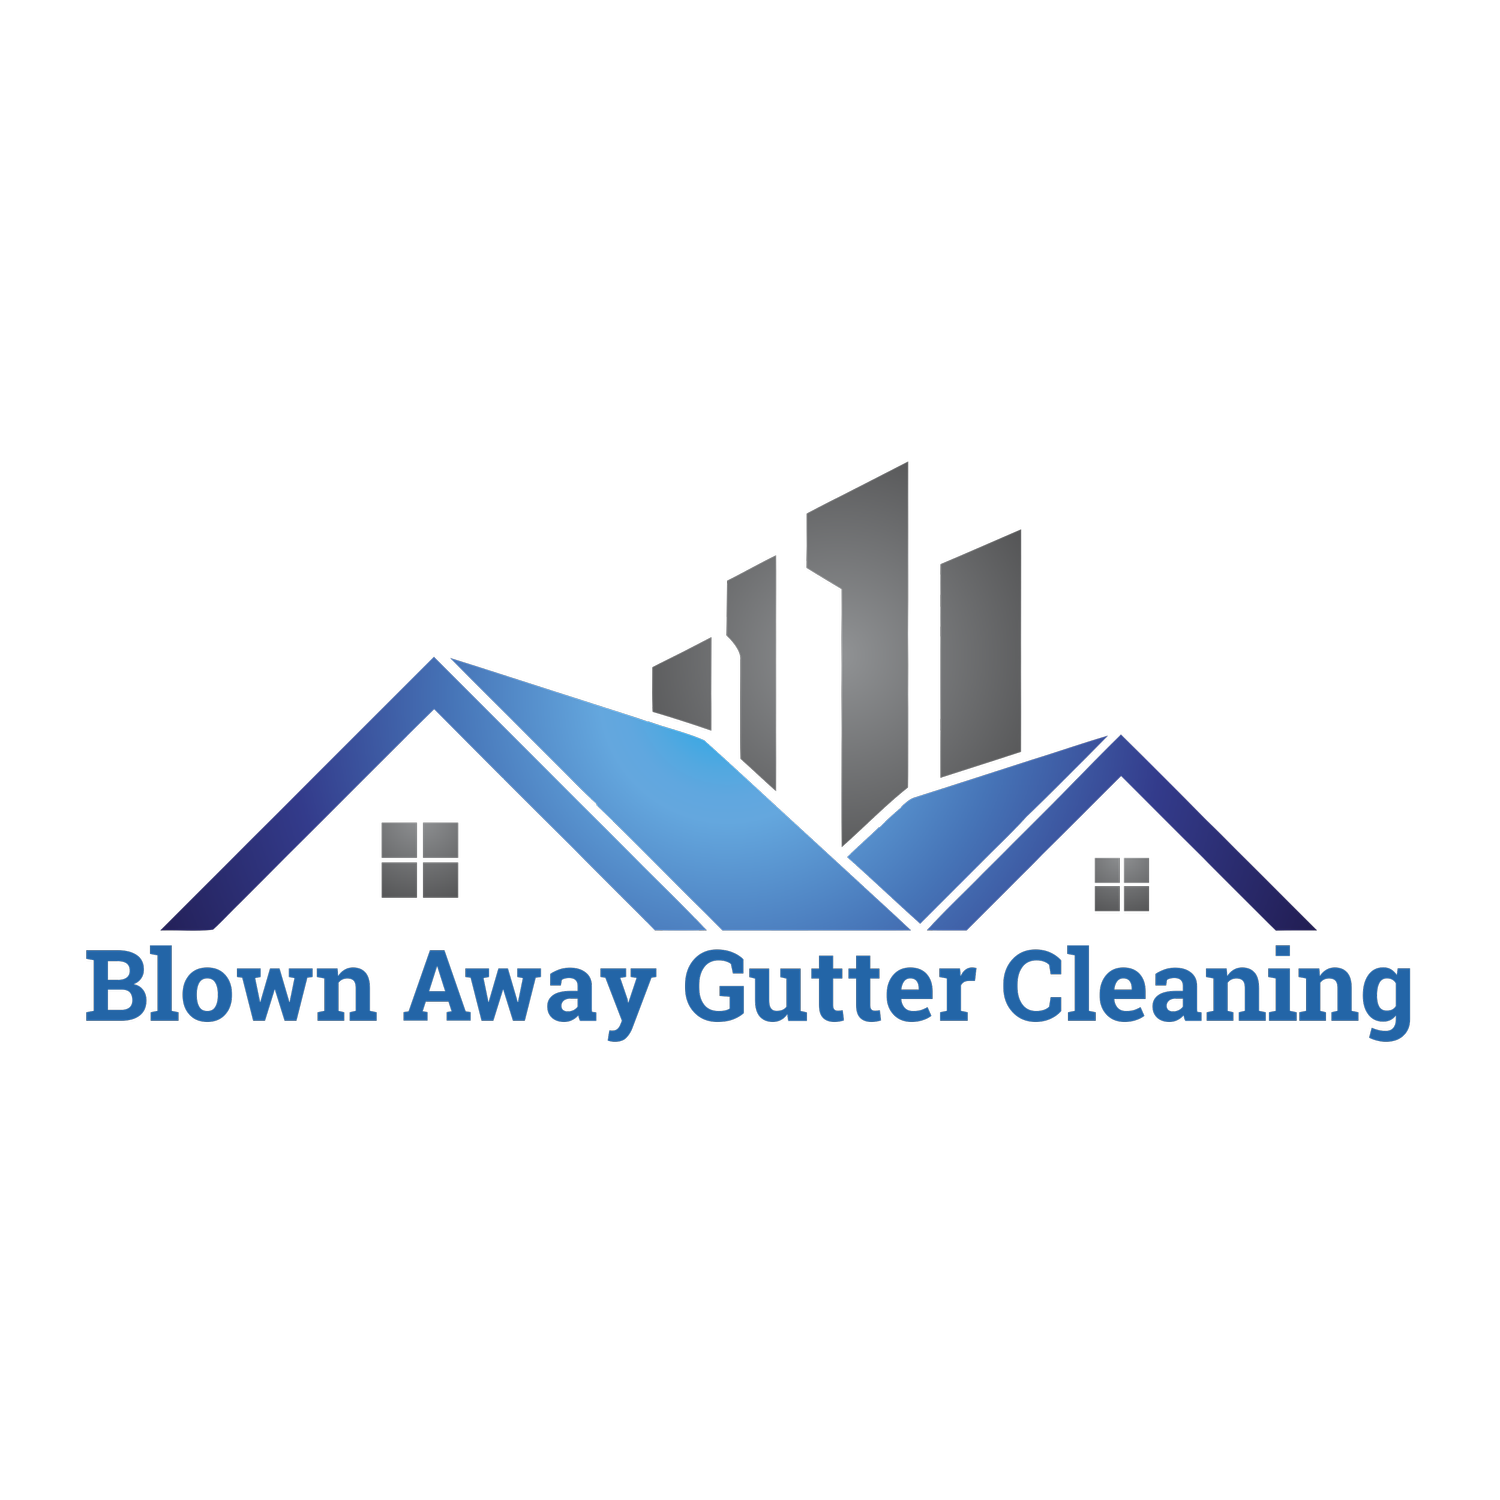 Blown Away Gutter Cleaning